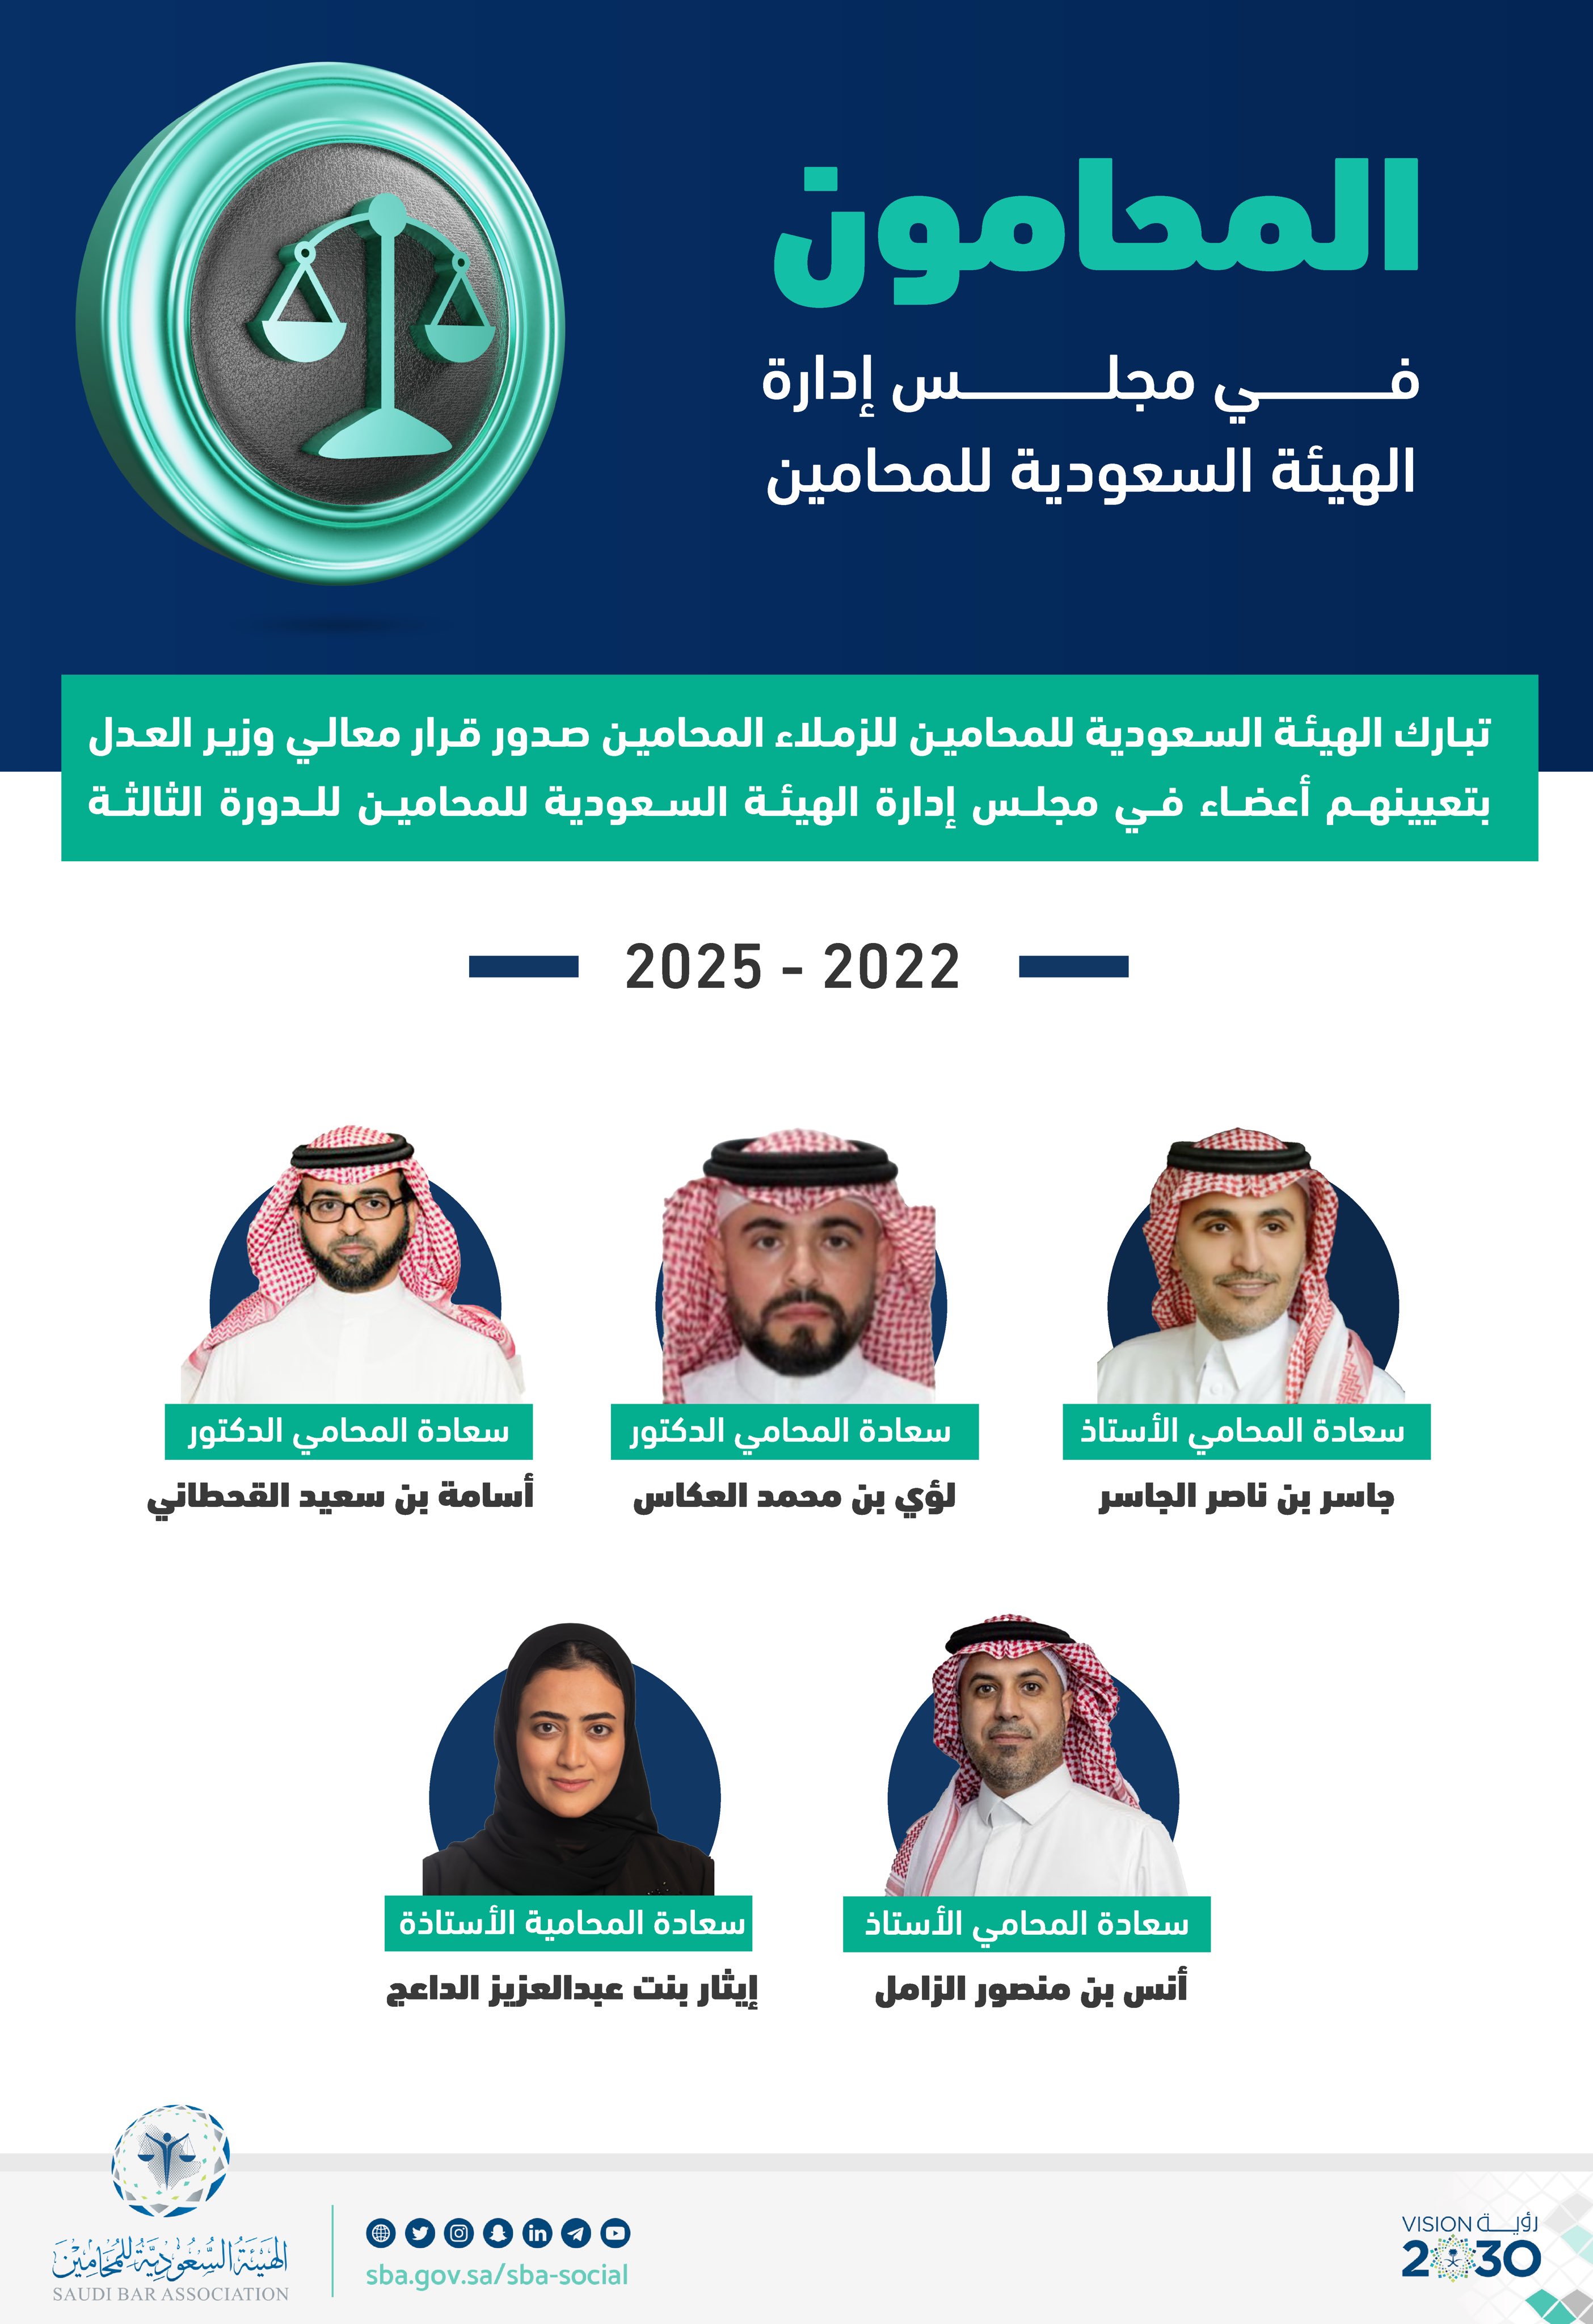 السعودية للمحامين الهيئة رابط الهيئة